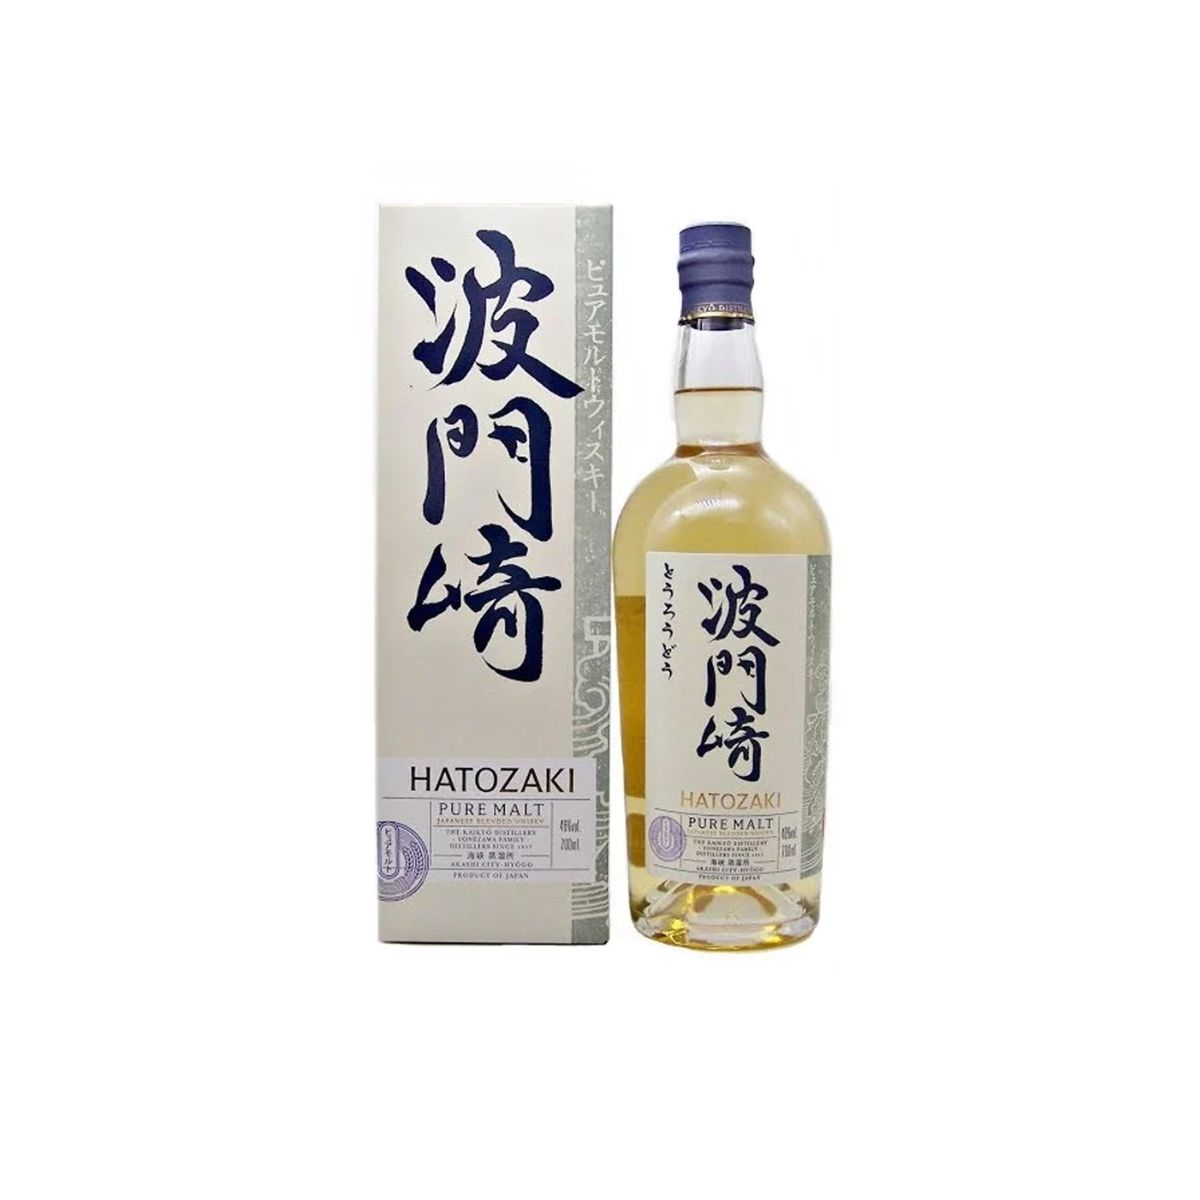 Hatozaki Pure Malt Whisky NV